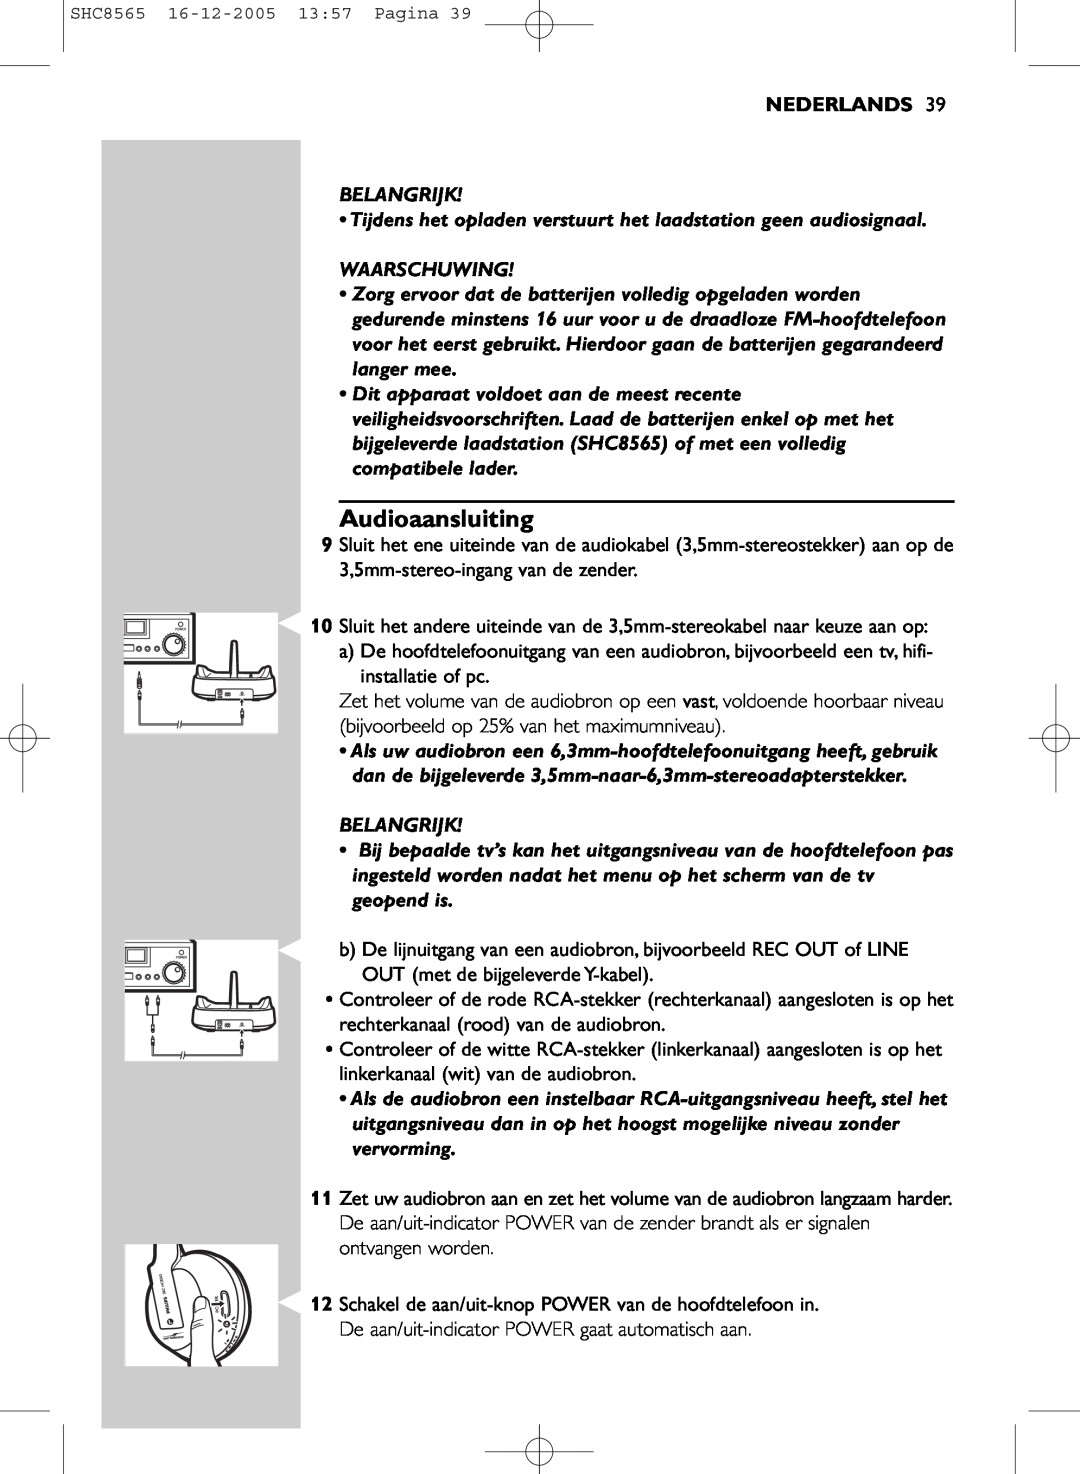 Philips SHC8565 manual Audioaansluiting, Nederlands, Belangrijk, Waarschuwing 